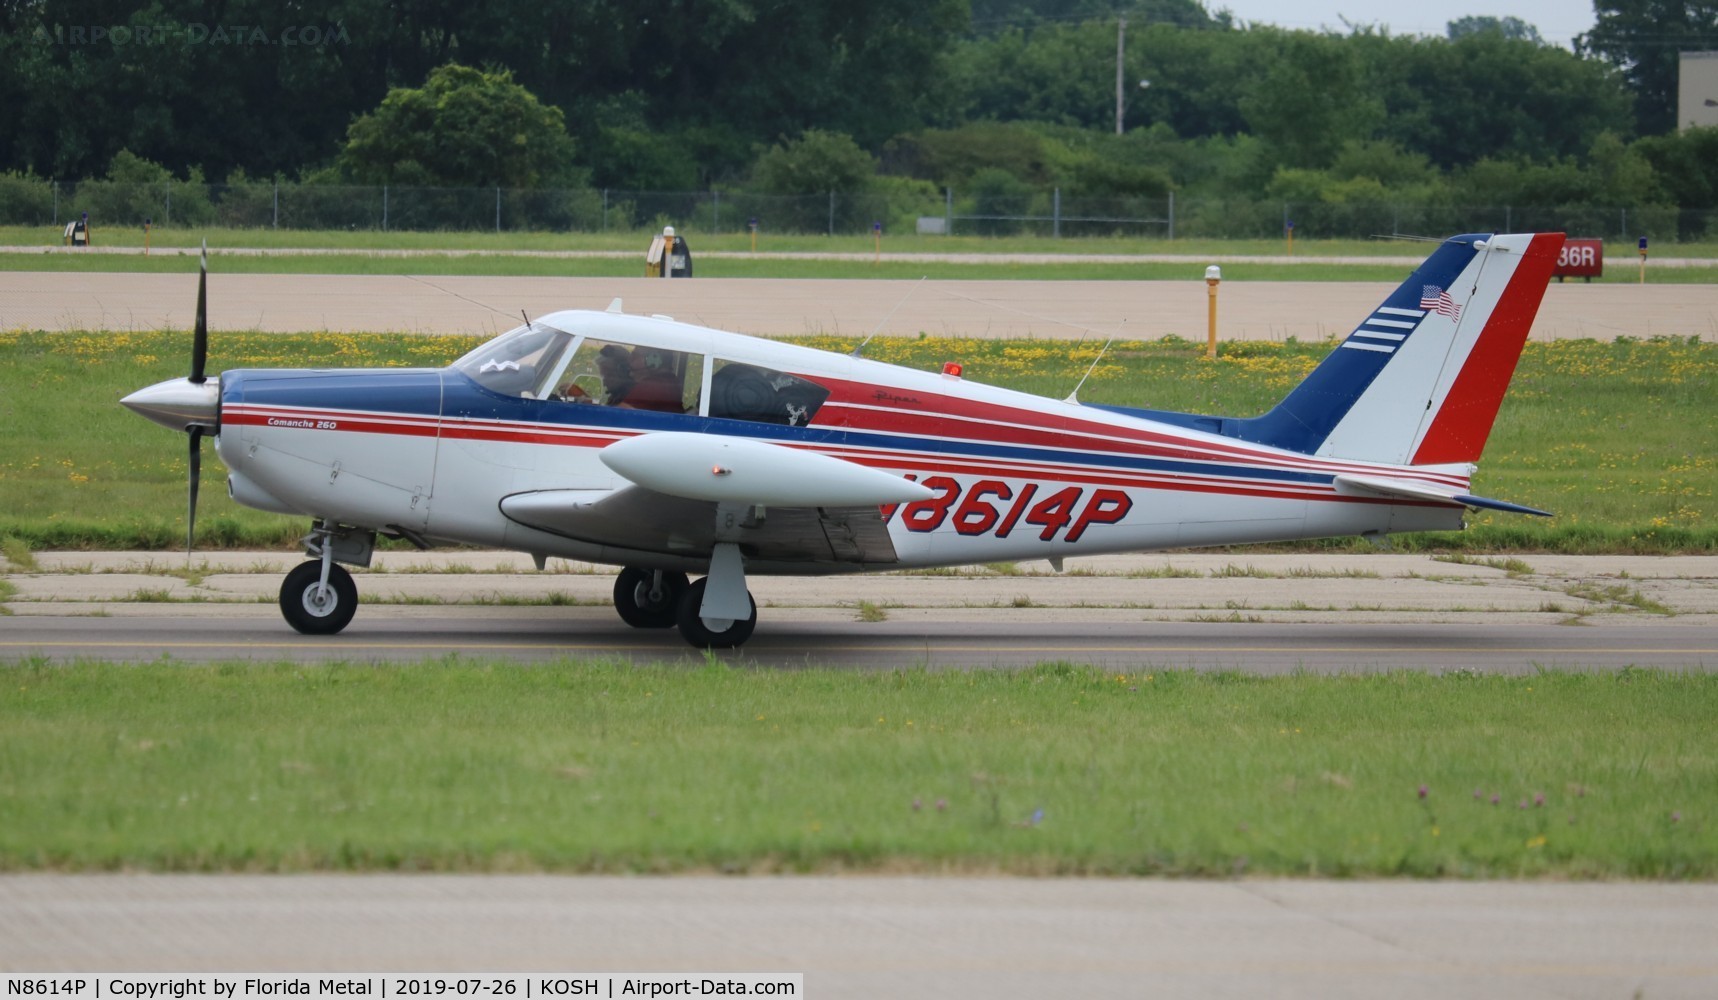 N8614P, 1964 Piper PA-24-260 Comanche C/N 24-4065, PA-24